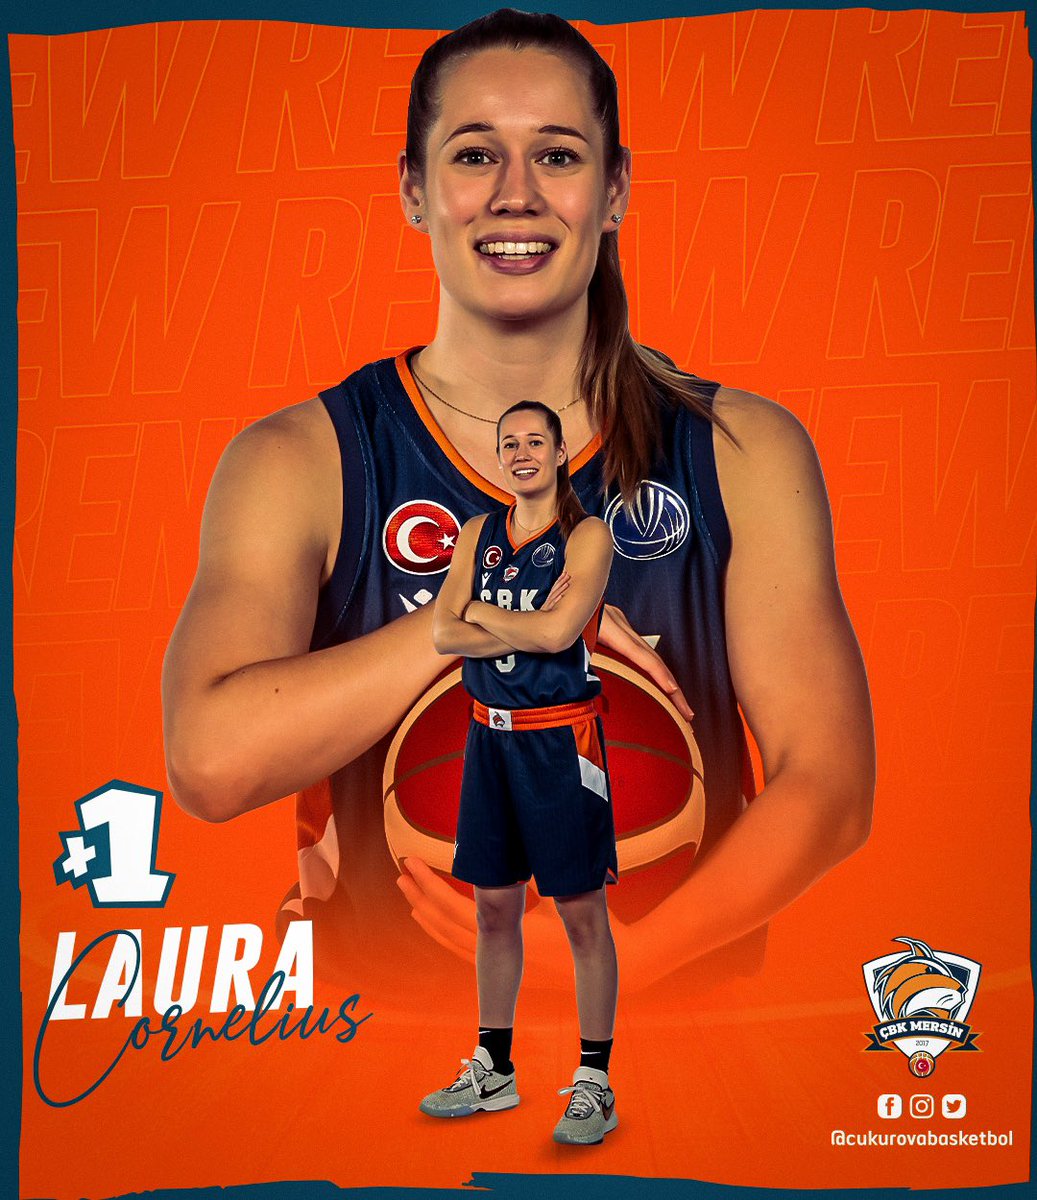 ✍️ Laura Cornelius 1 yıl daha bizimle! 🧡💙

@laaau96 

Organizasyonumuz yeni sezon kadro yapılanmamız doğrultusunda Laura Cornelius ile 1 yıllık sözleşme yeniledi.

#euroleaguewomen #kadınlarbasketbolsüperligi